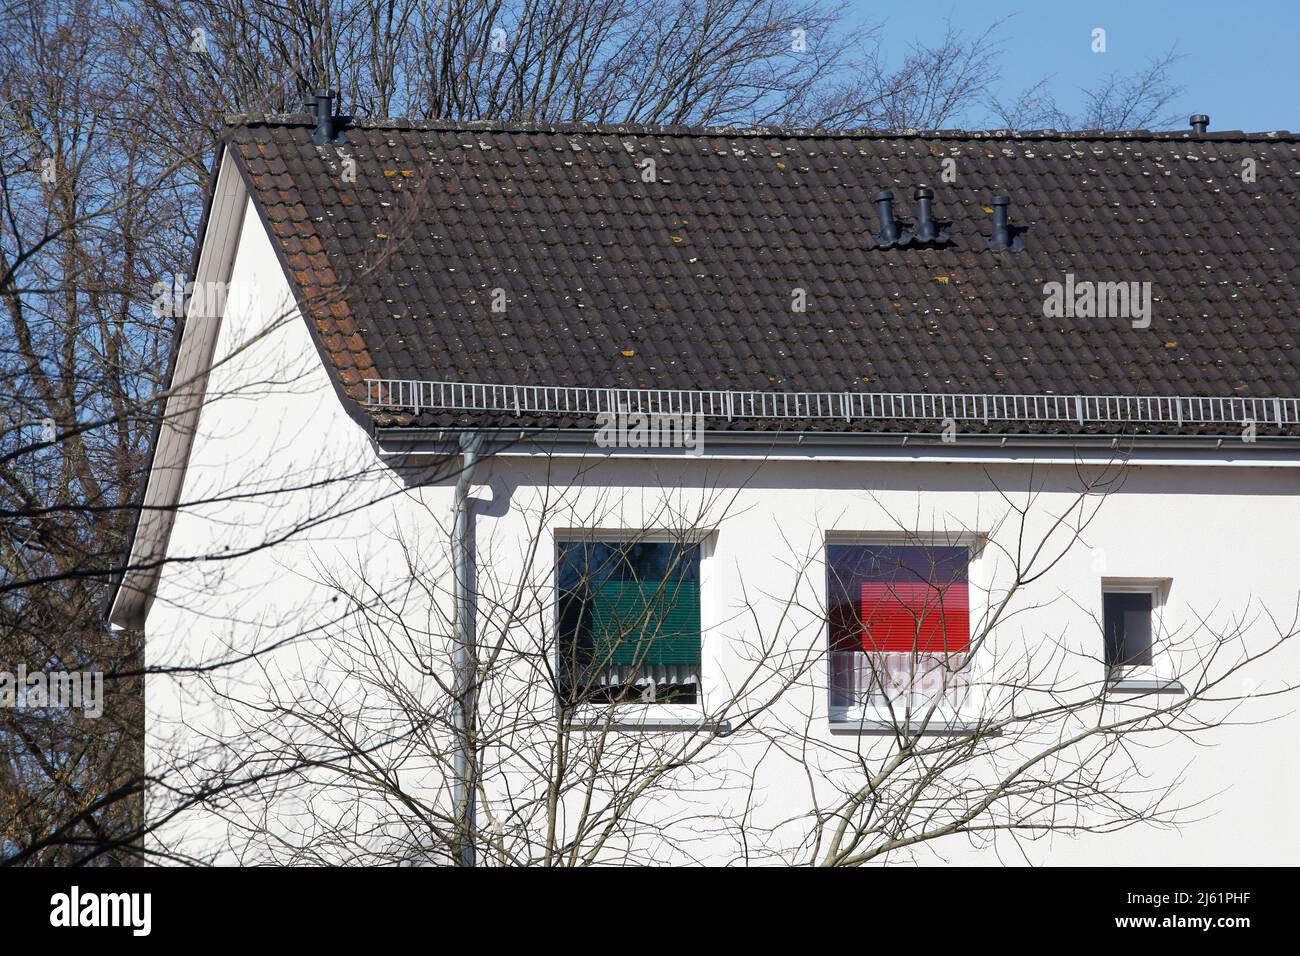 Fensterfront, Modernes, weisses  Wohngebäude, Findorff, Bremen, Deutschland, Europa Stock Photo